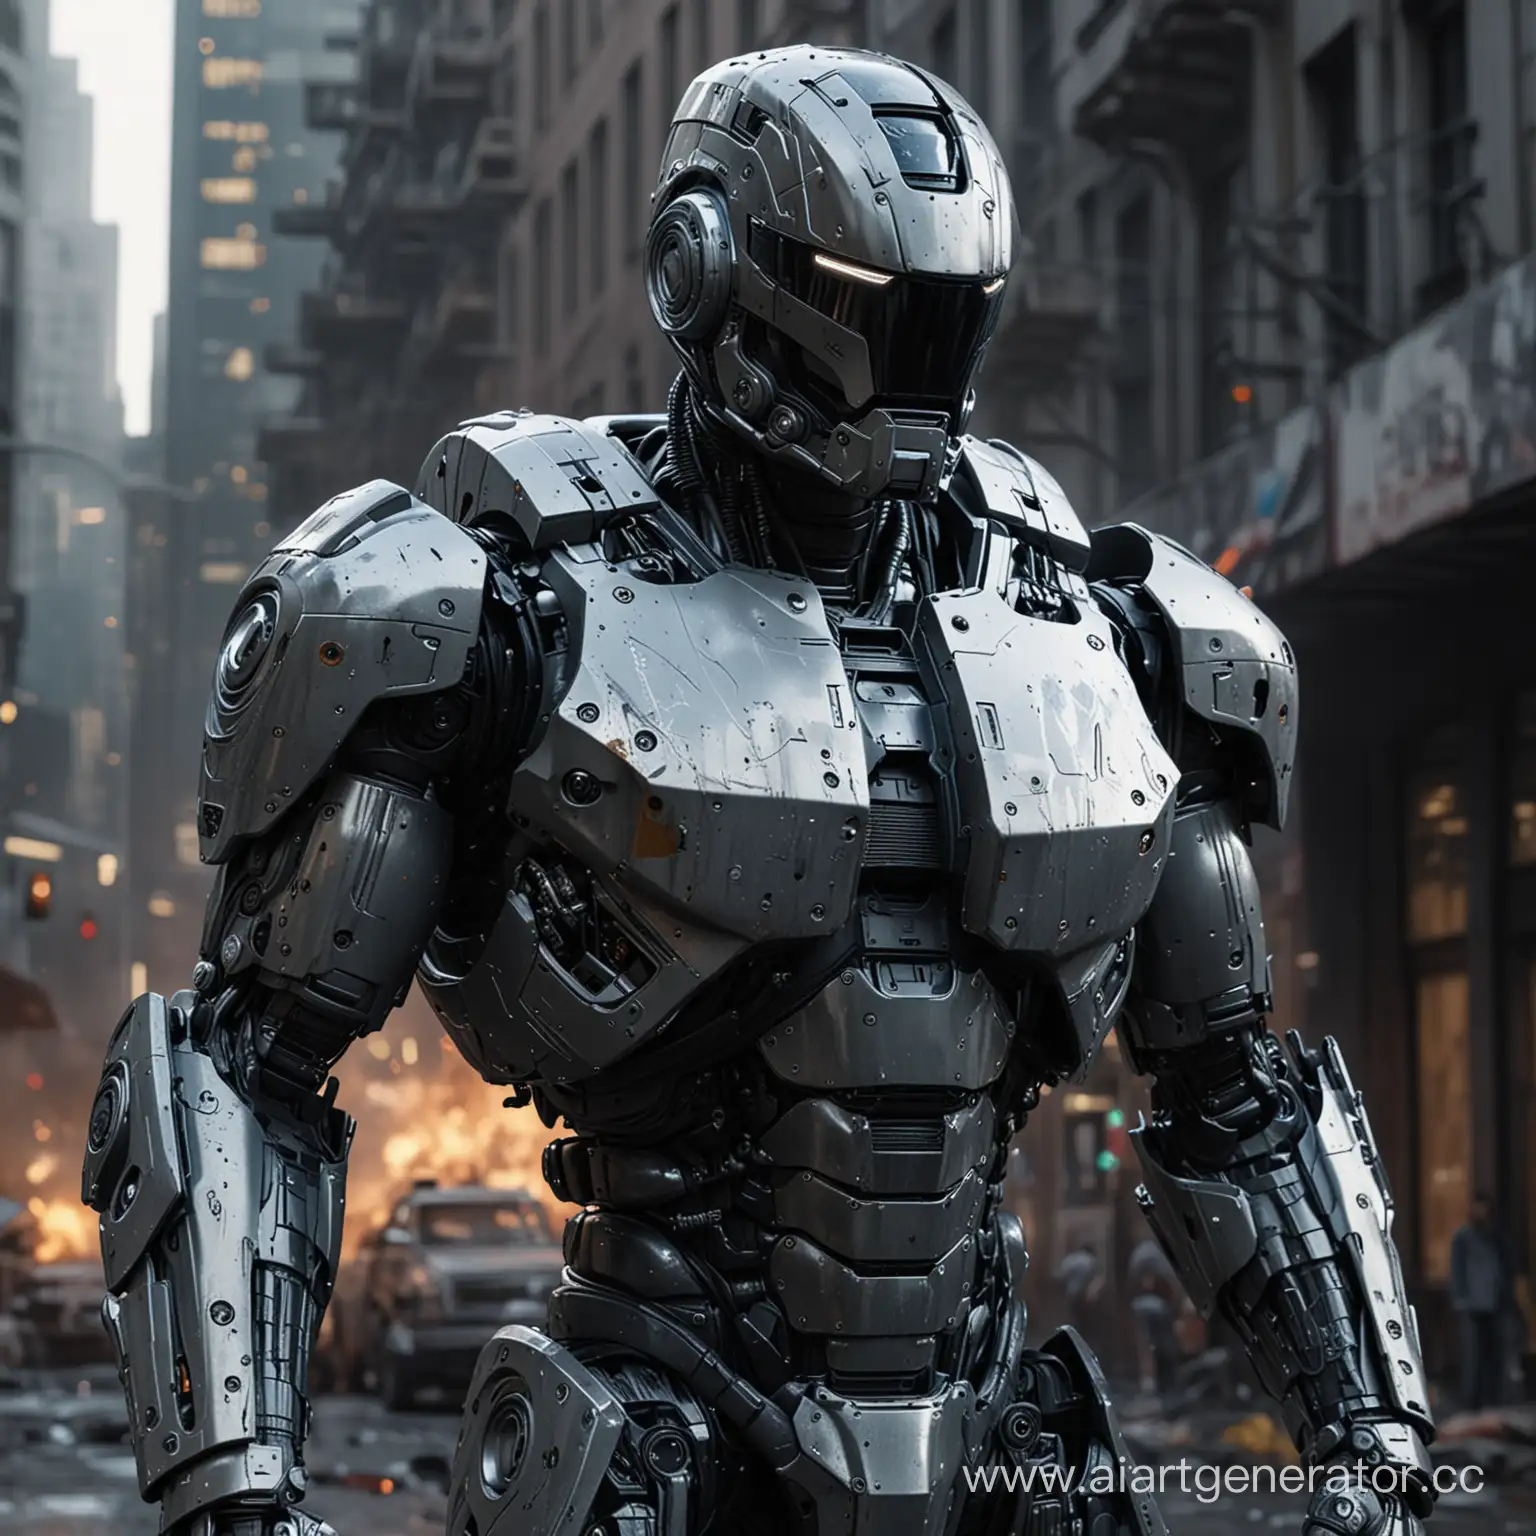 Futuristic-Robocop-Armor-ScientificTechnological-Masterpiece-with-Megalopolis-Backdrop